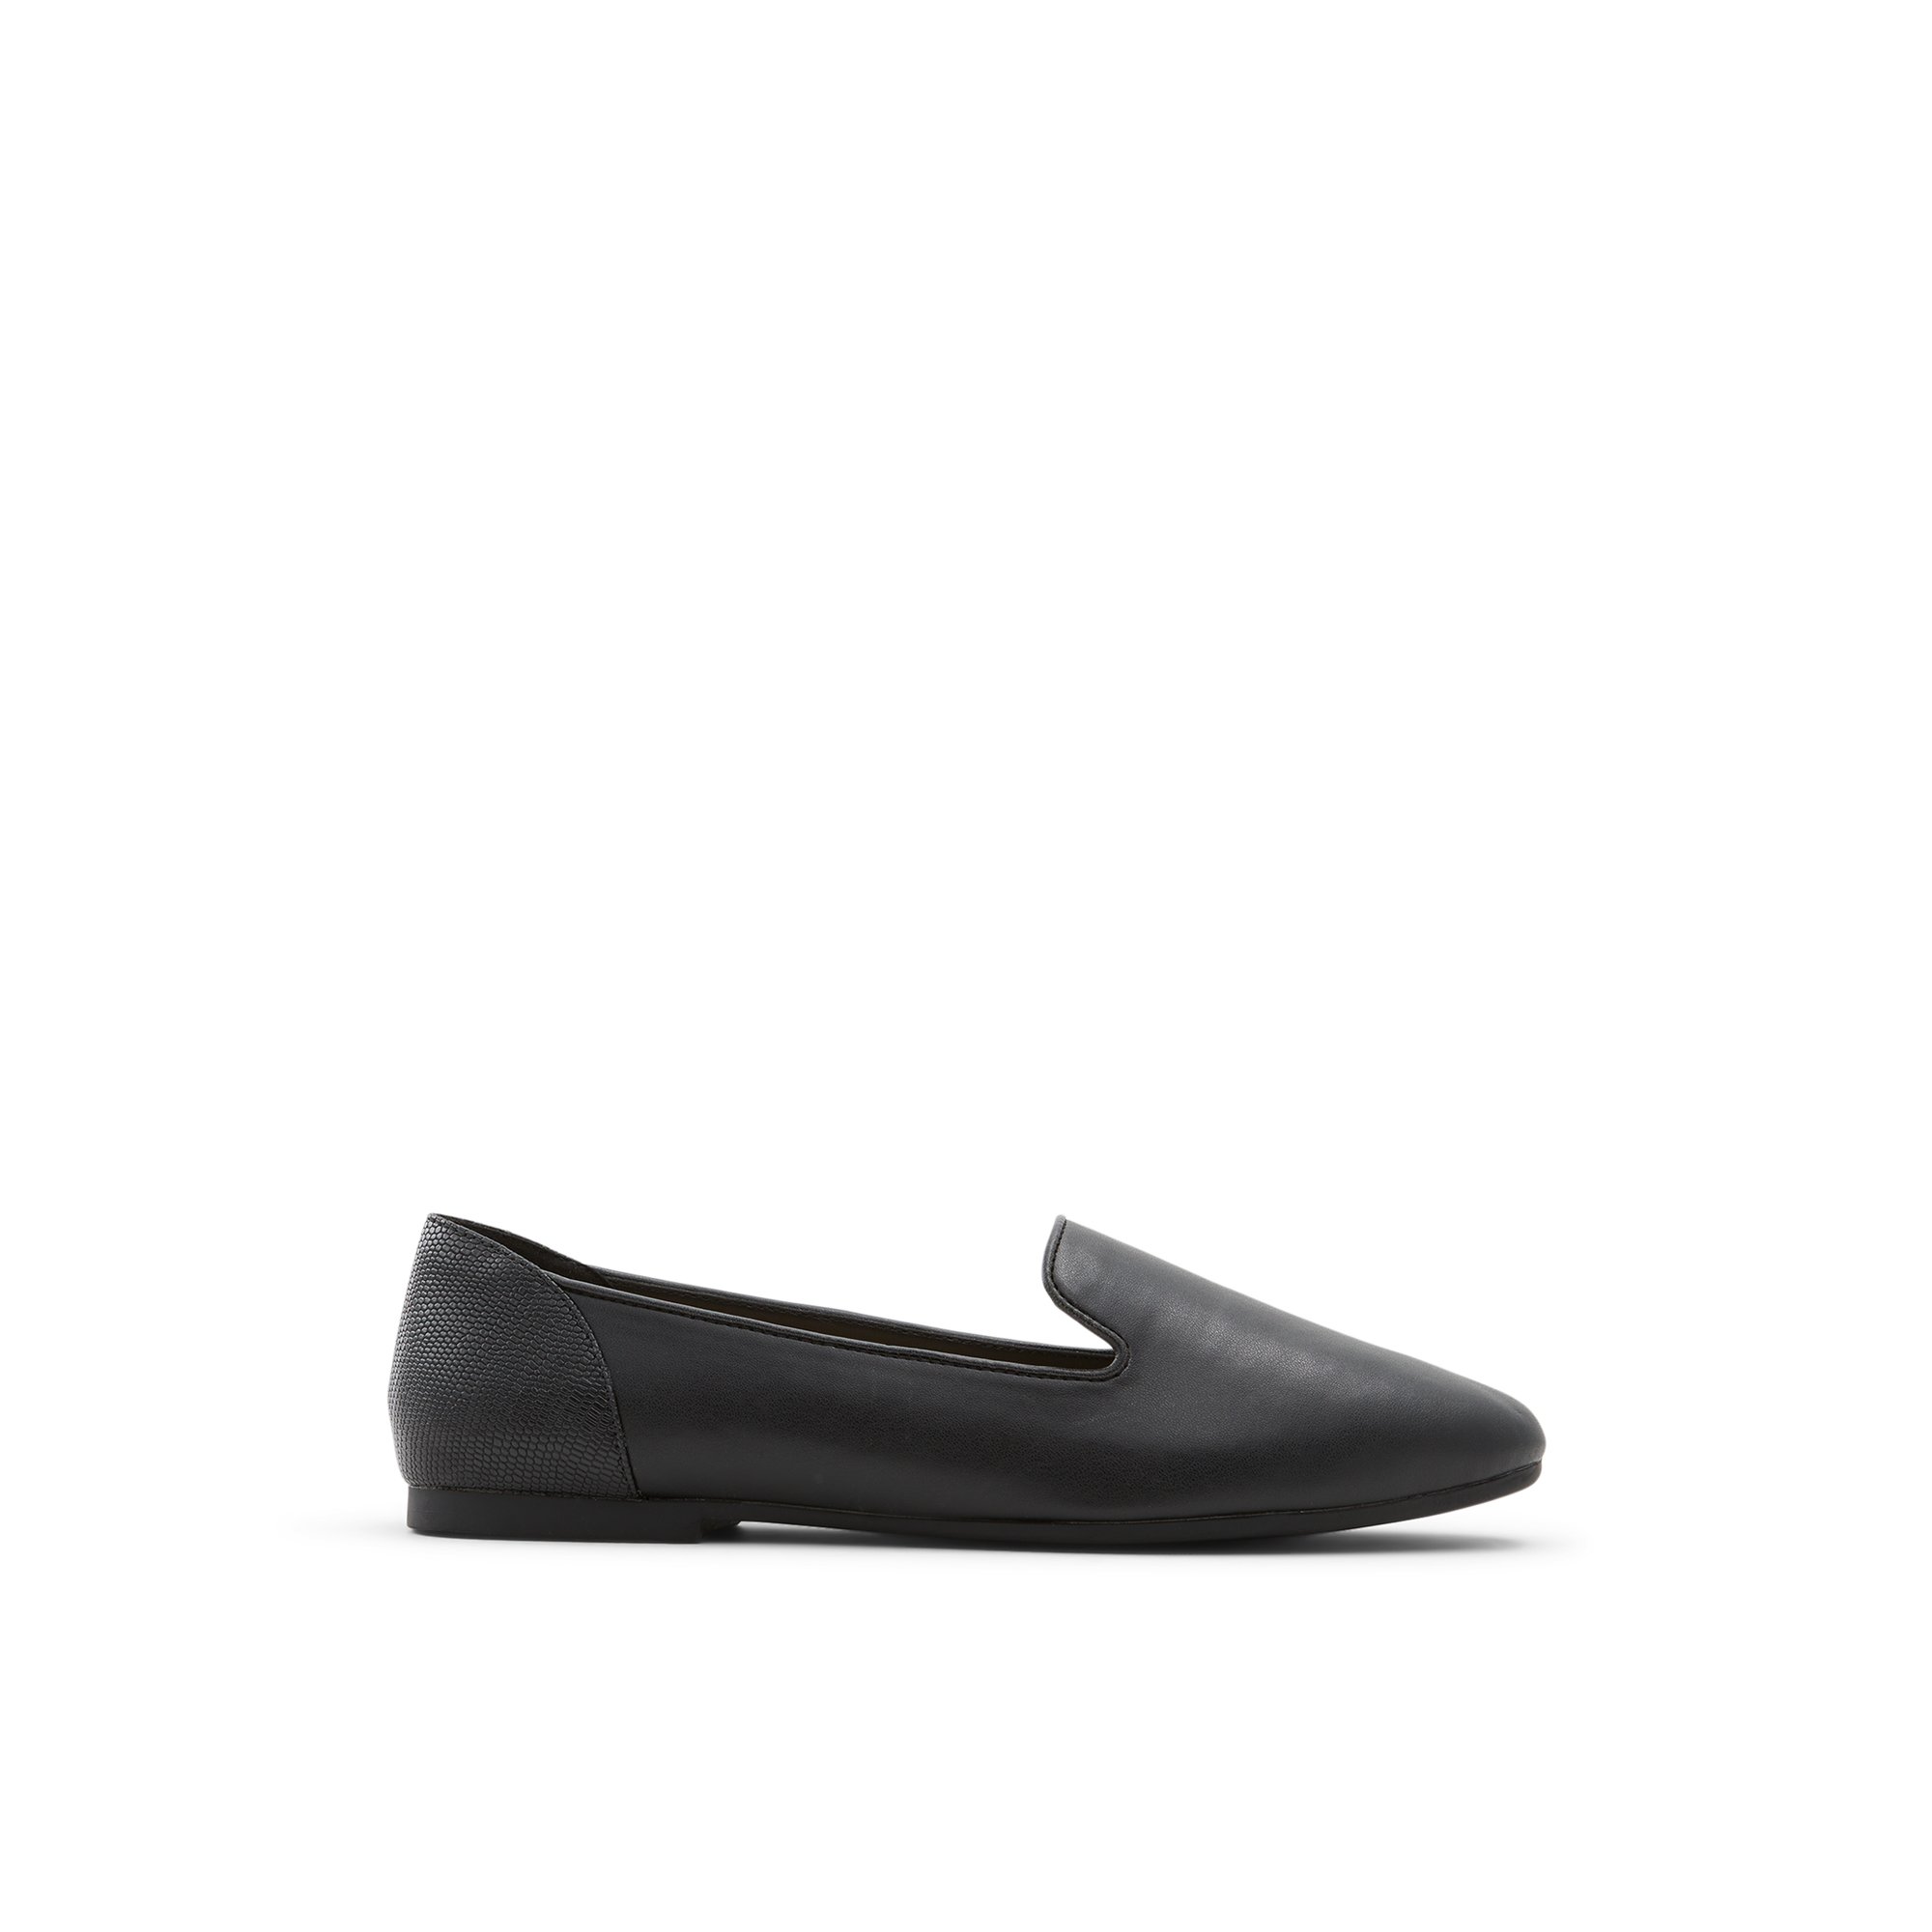 ALDO Mythimna - Women's Loafers - Black